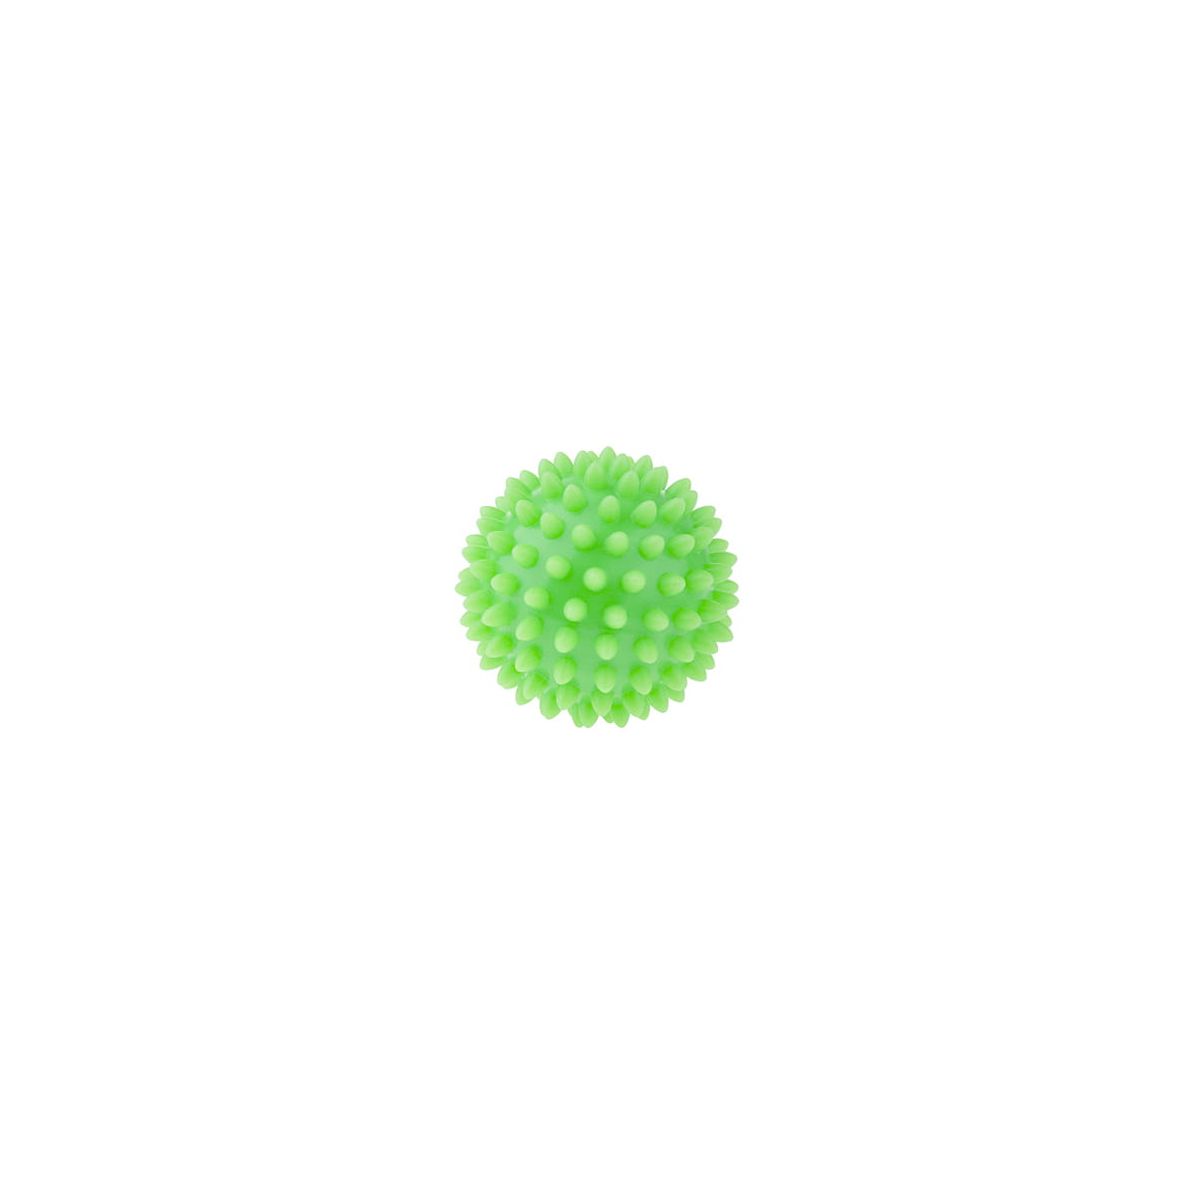 Piłka do masażu rehabilitacyjna 6,6cm zielona guma Tullo (411)